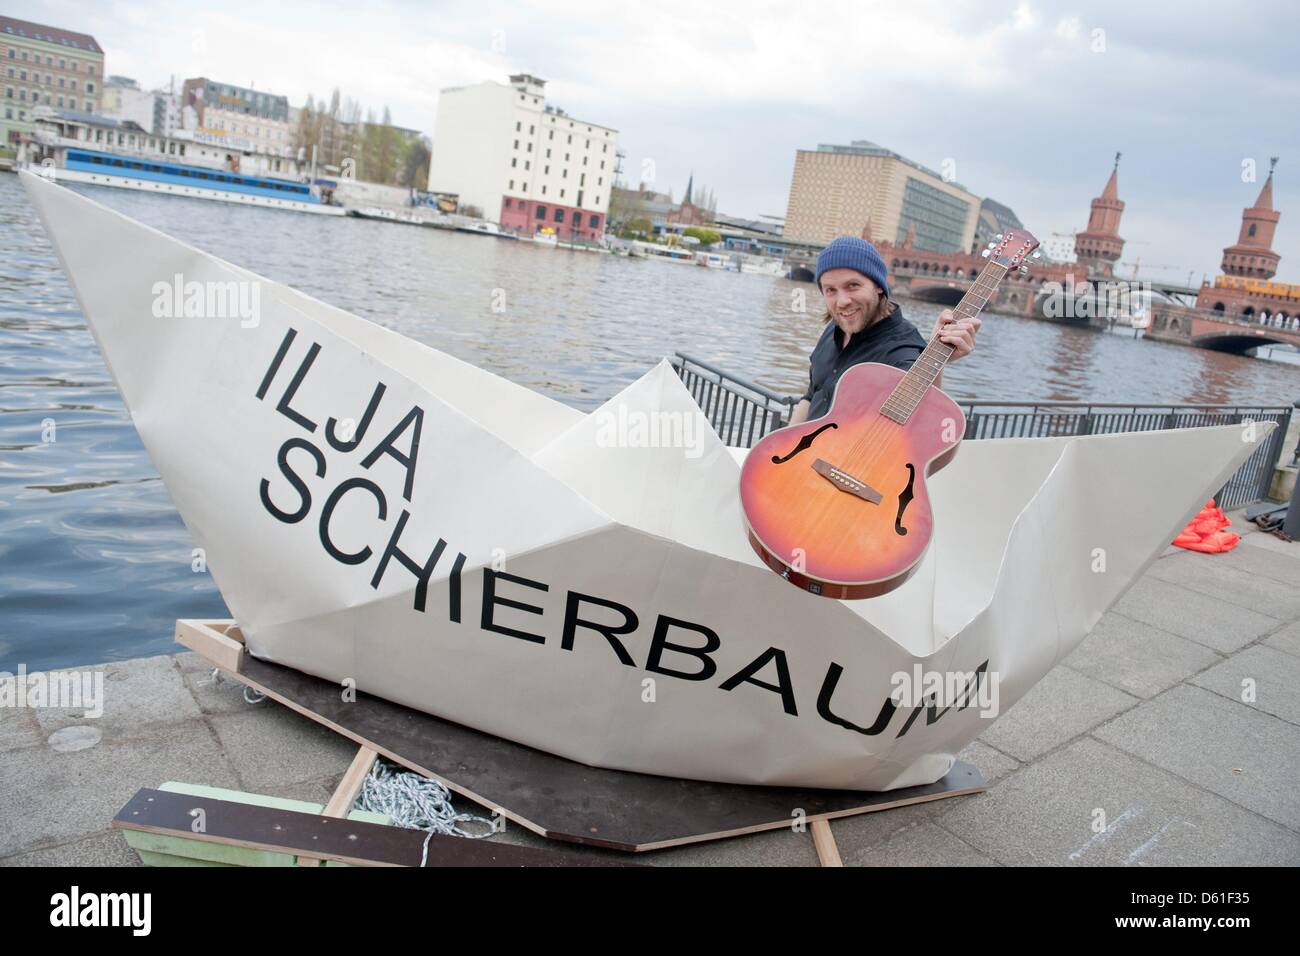 El cantautor Ilja Schierbaum es retratada en un barco de papel gigante  situado frente al puente Oberbaum en el río Spree, en Berlín, Alemania, el  19 de abril de 2012. Schierbaum presenta